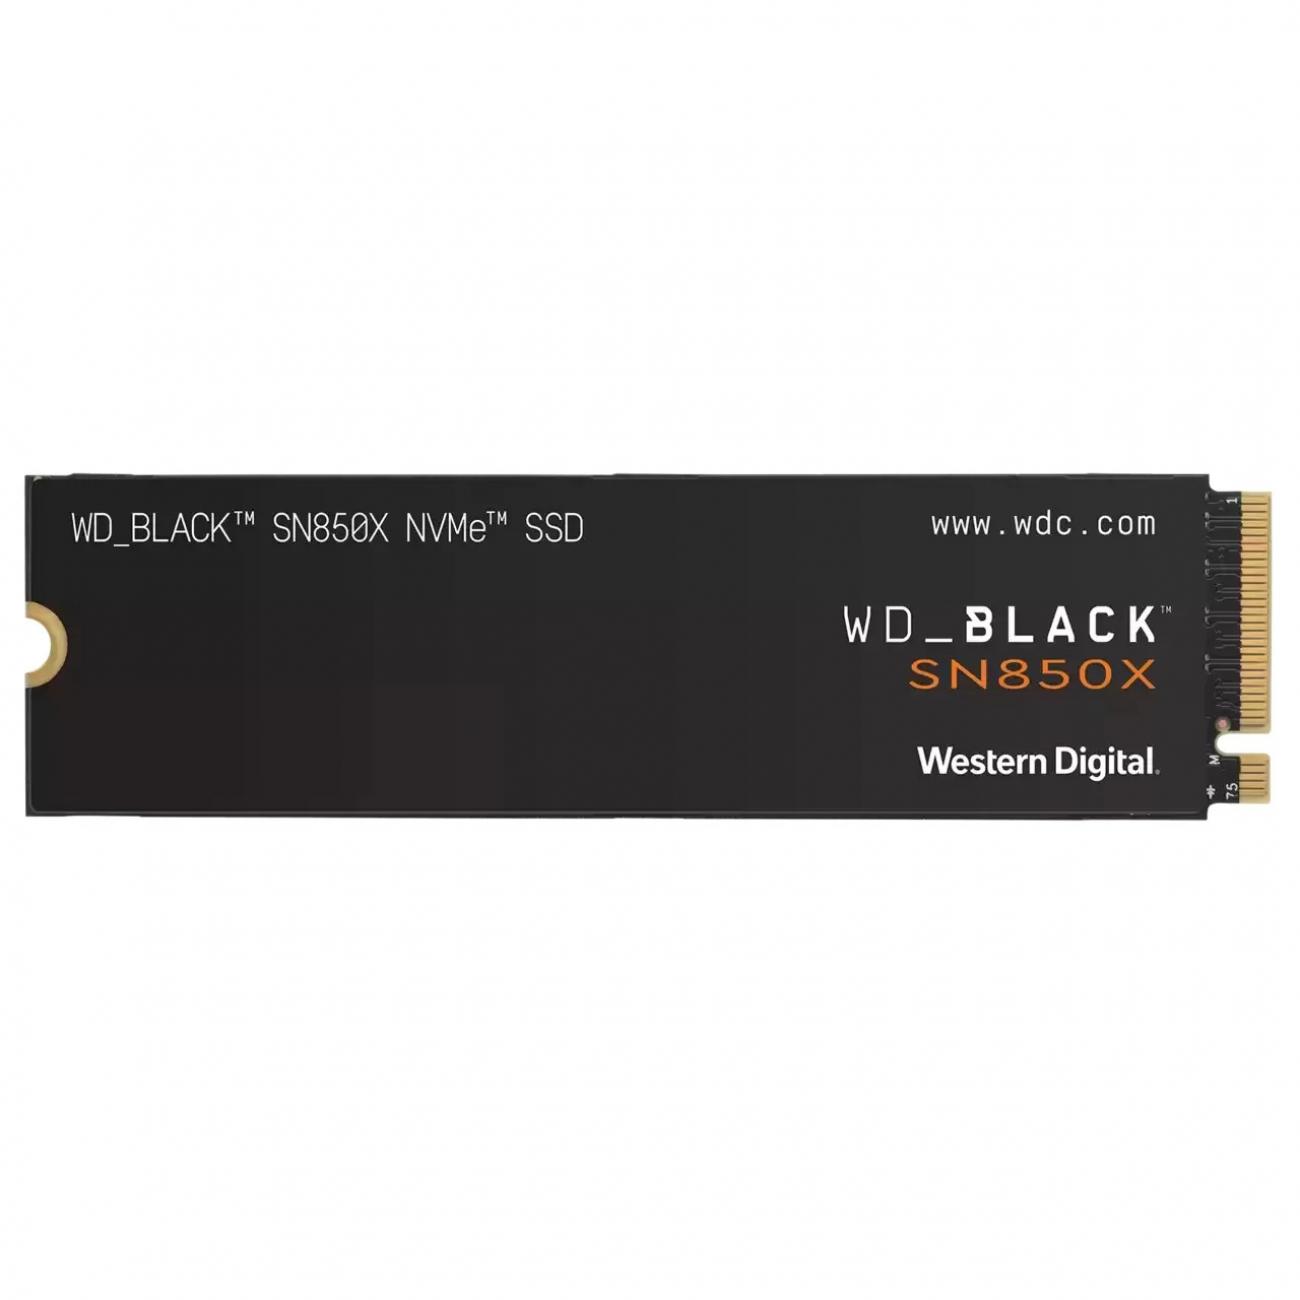 WESTERN DIGITAL SSD INTERNO BLACK SN850X 1TB NVME M.2 2280 PCIE 4.0 WESTERN DIGITAL